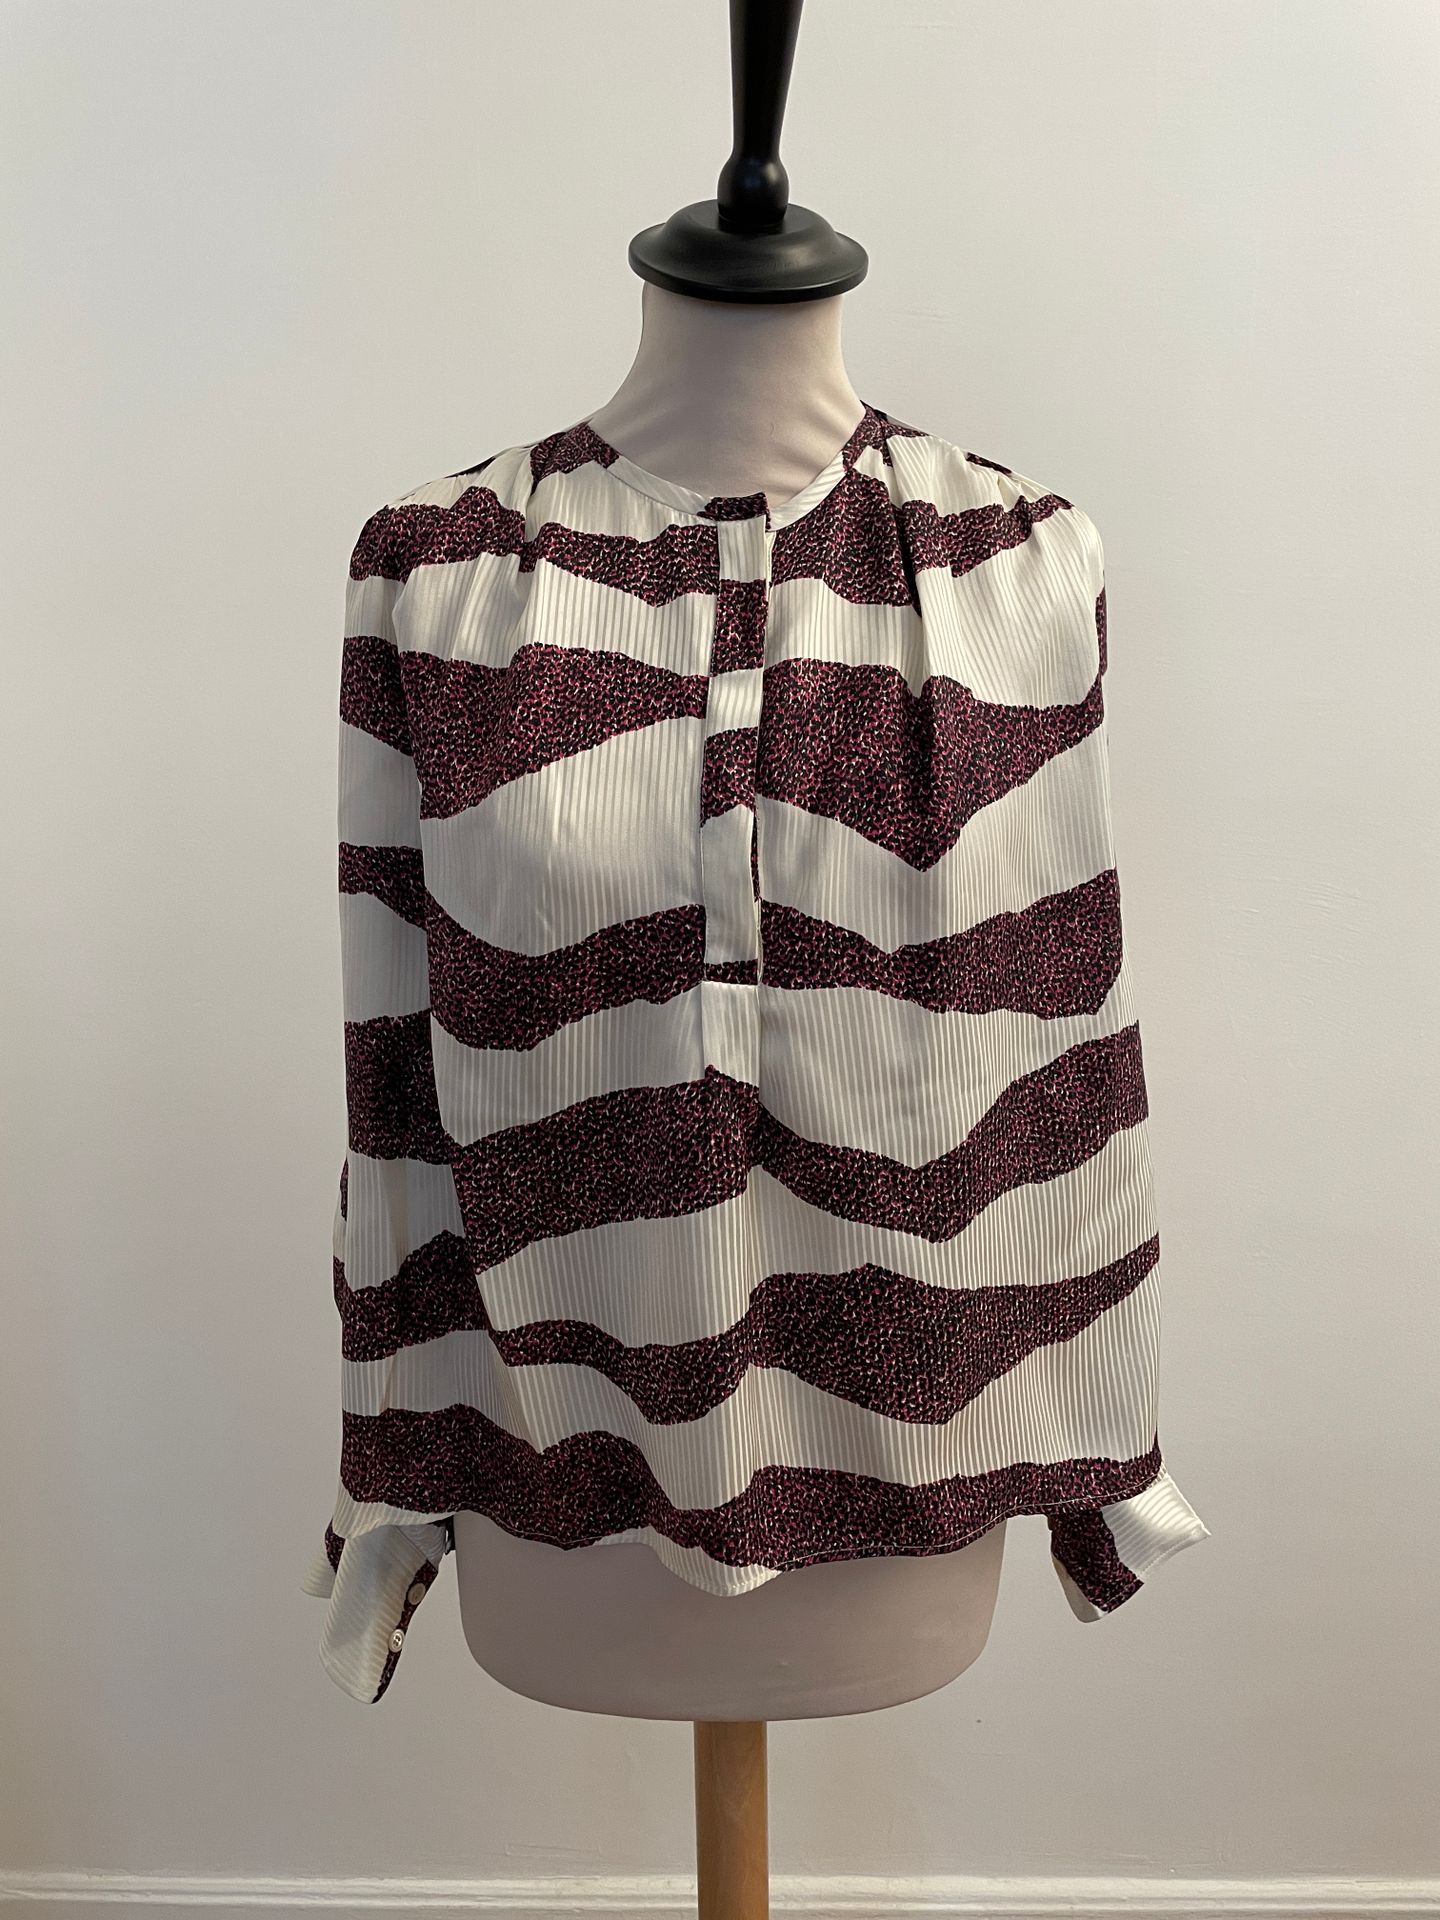 Null 丽莎贝尔-马兰特 (ISABEL MARANT)

紫色和黑色动物图案的丝绸和粘胶上衣。

T.34